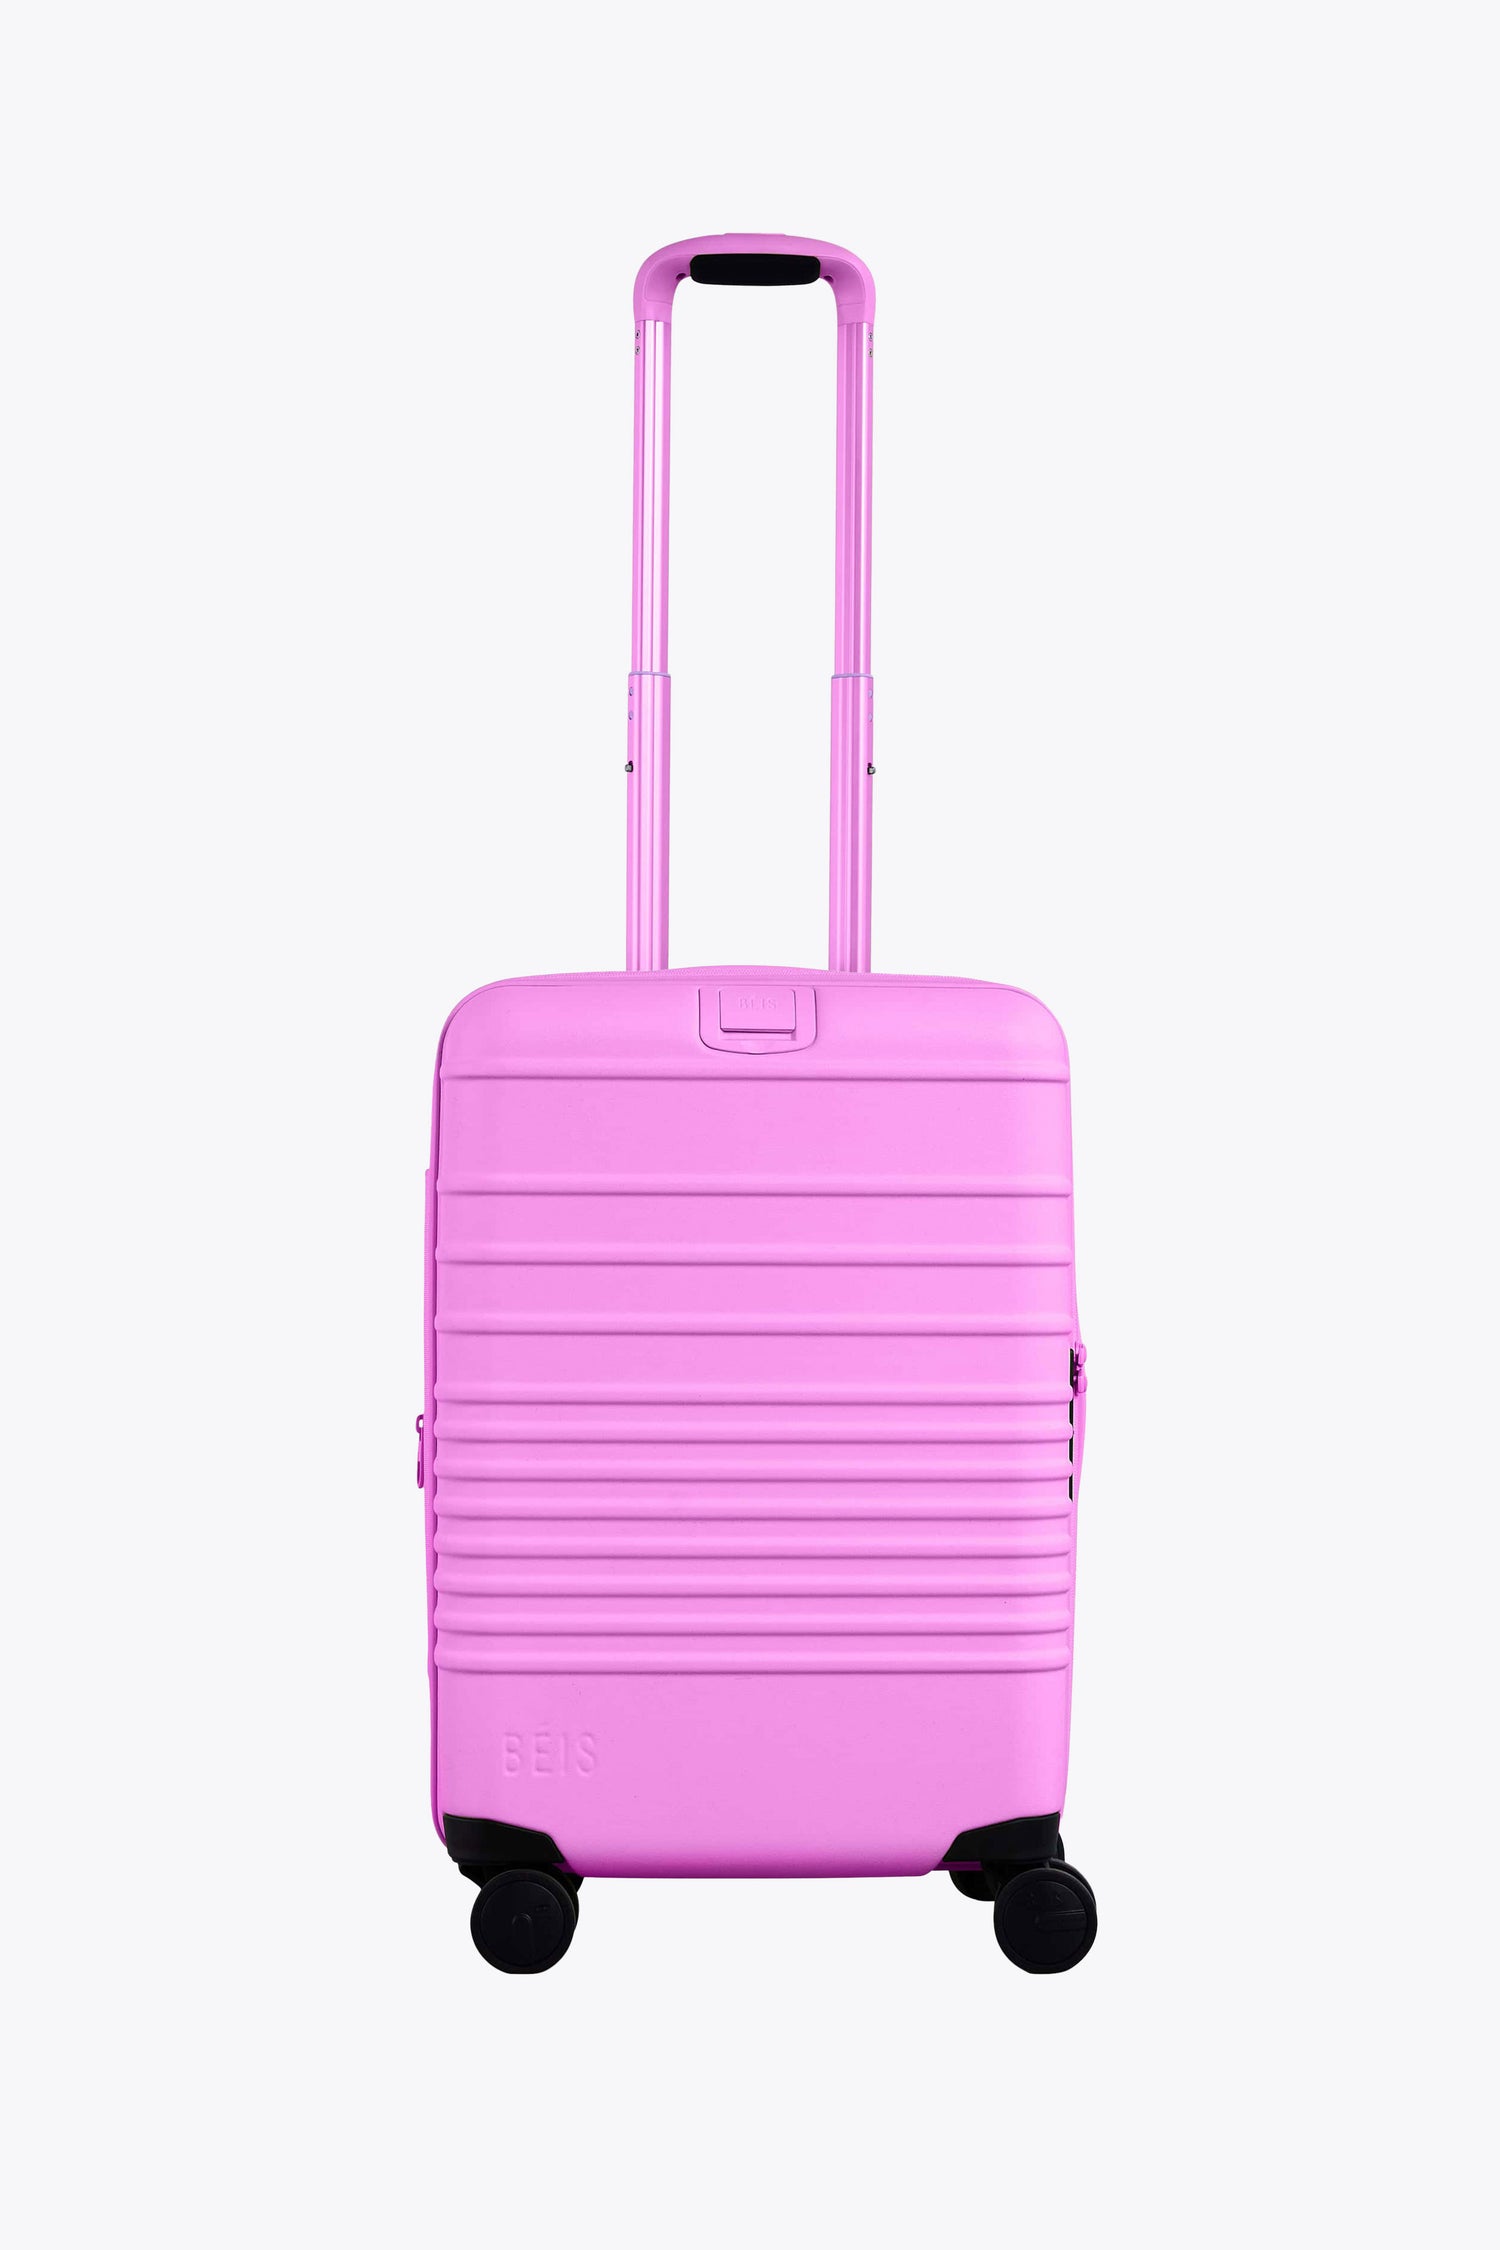 purple-luggage